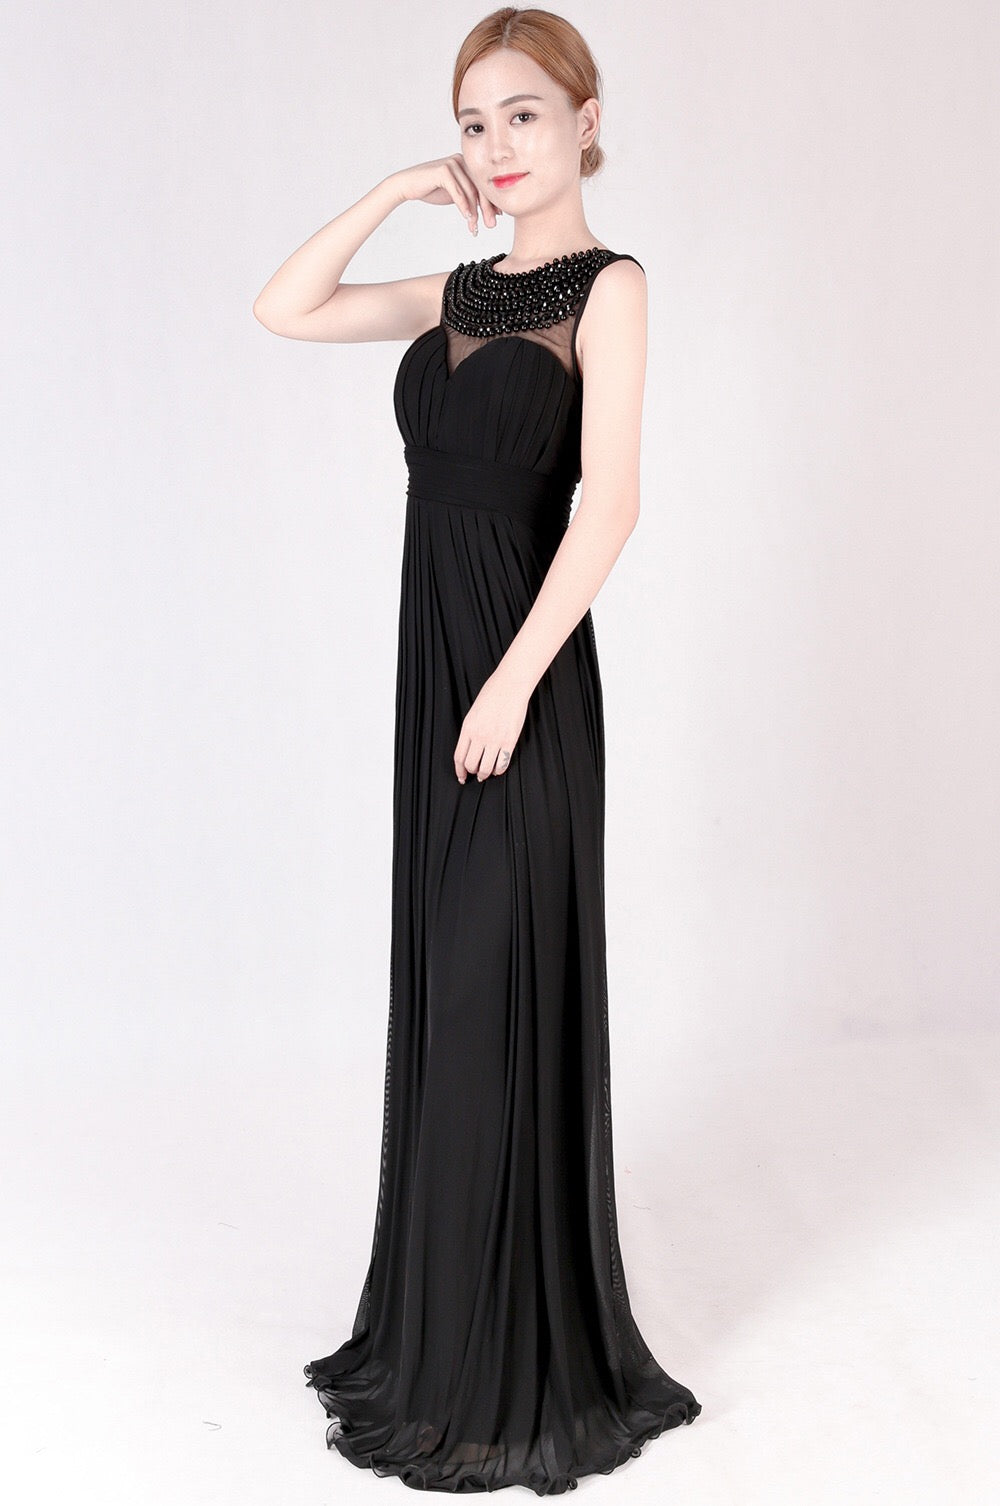 ashlyn マーメイドドレス ブルー ブラック M L XL - アルカドレス